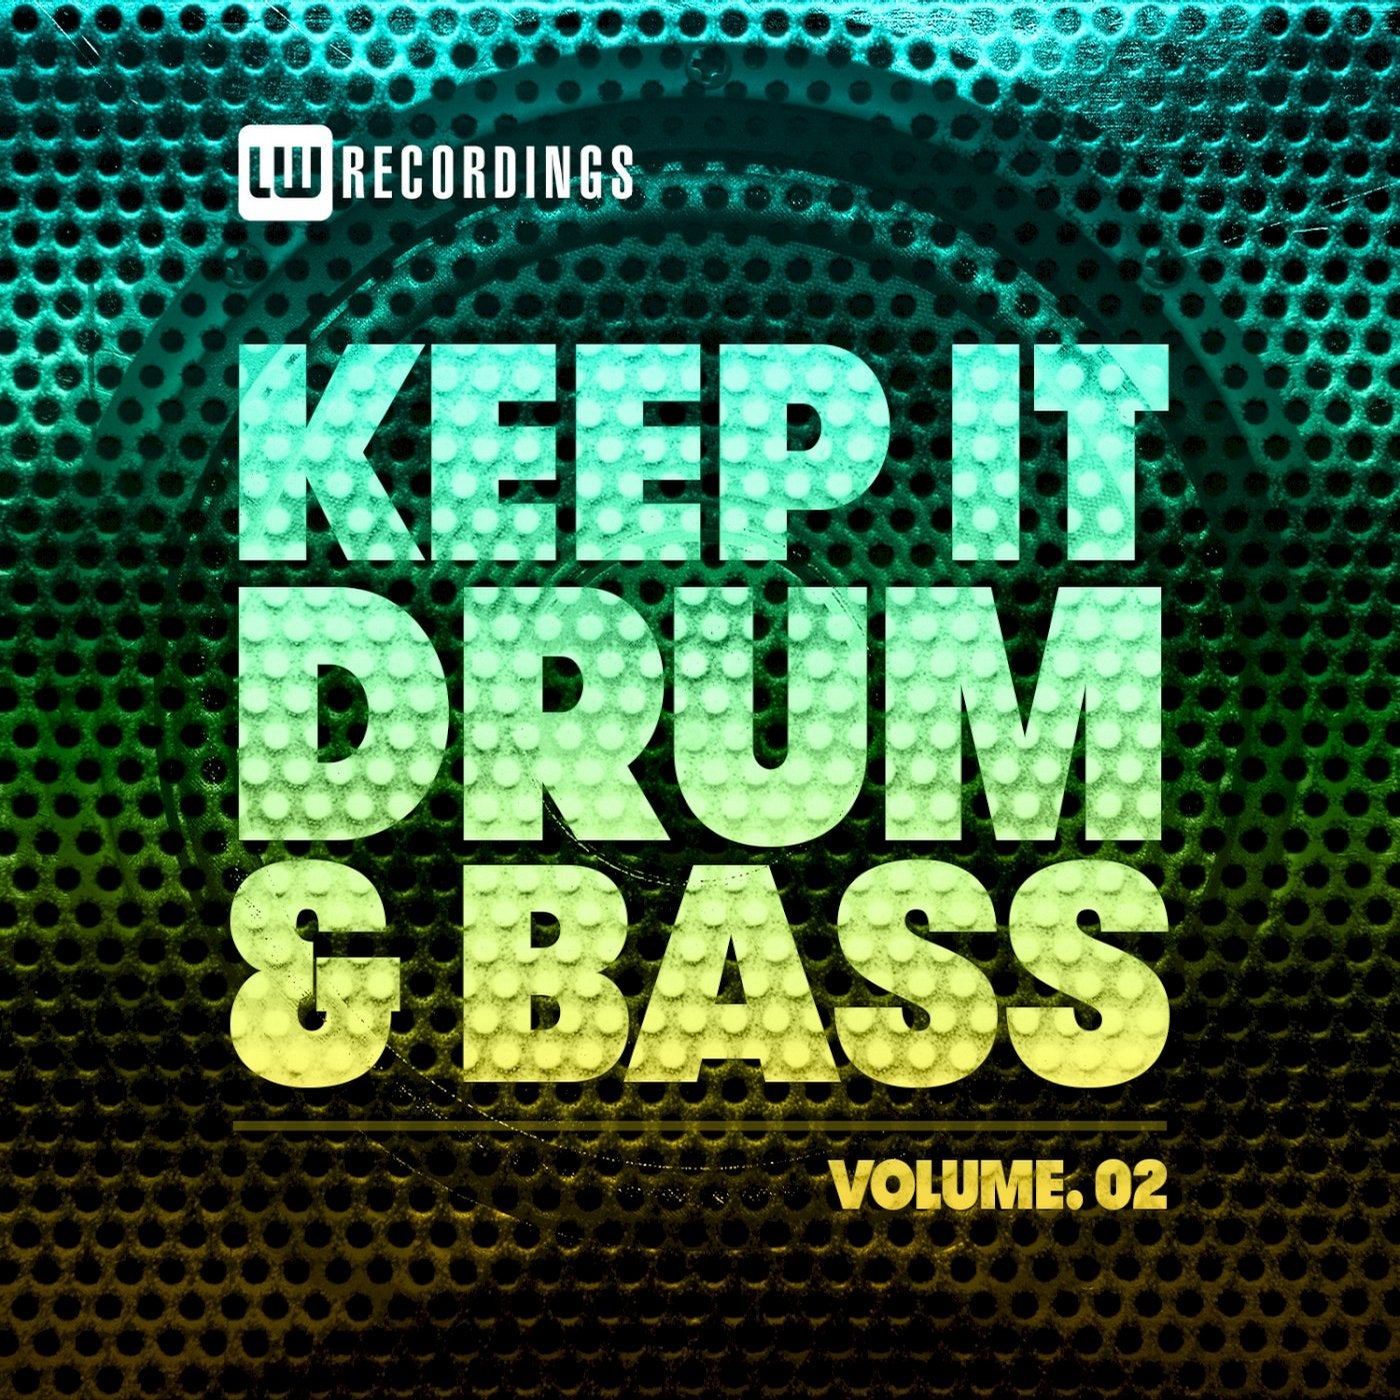 Keep It Drum & Bass, Vol. 02